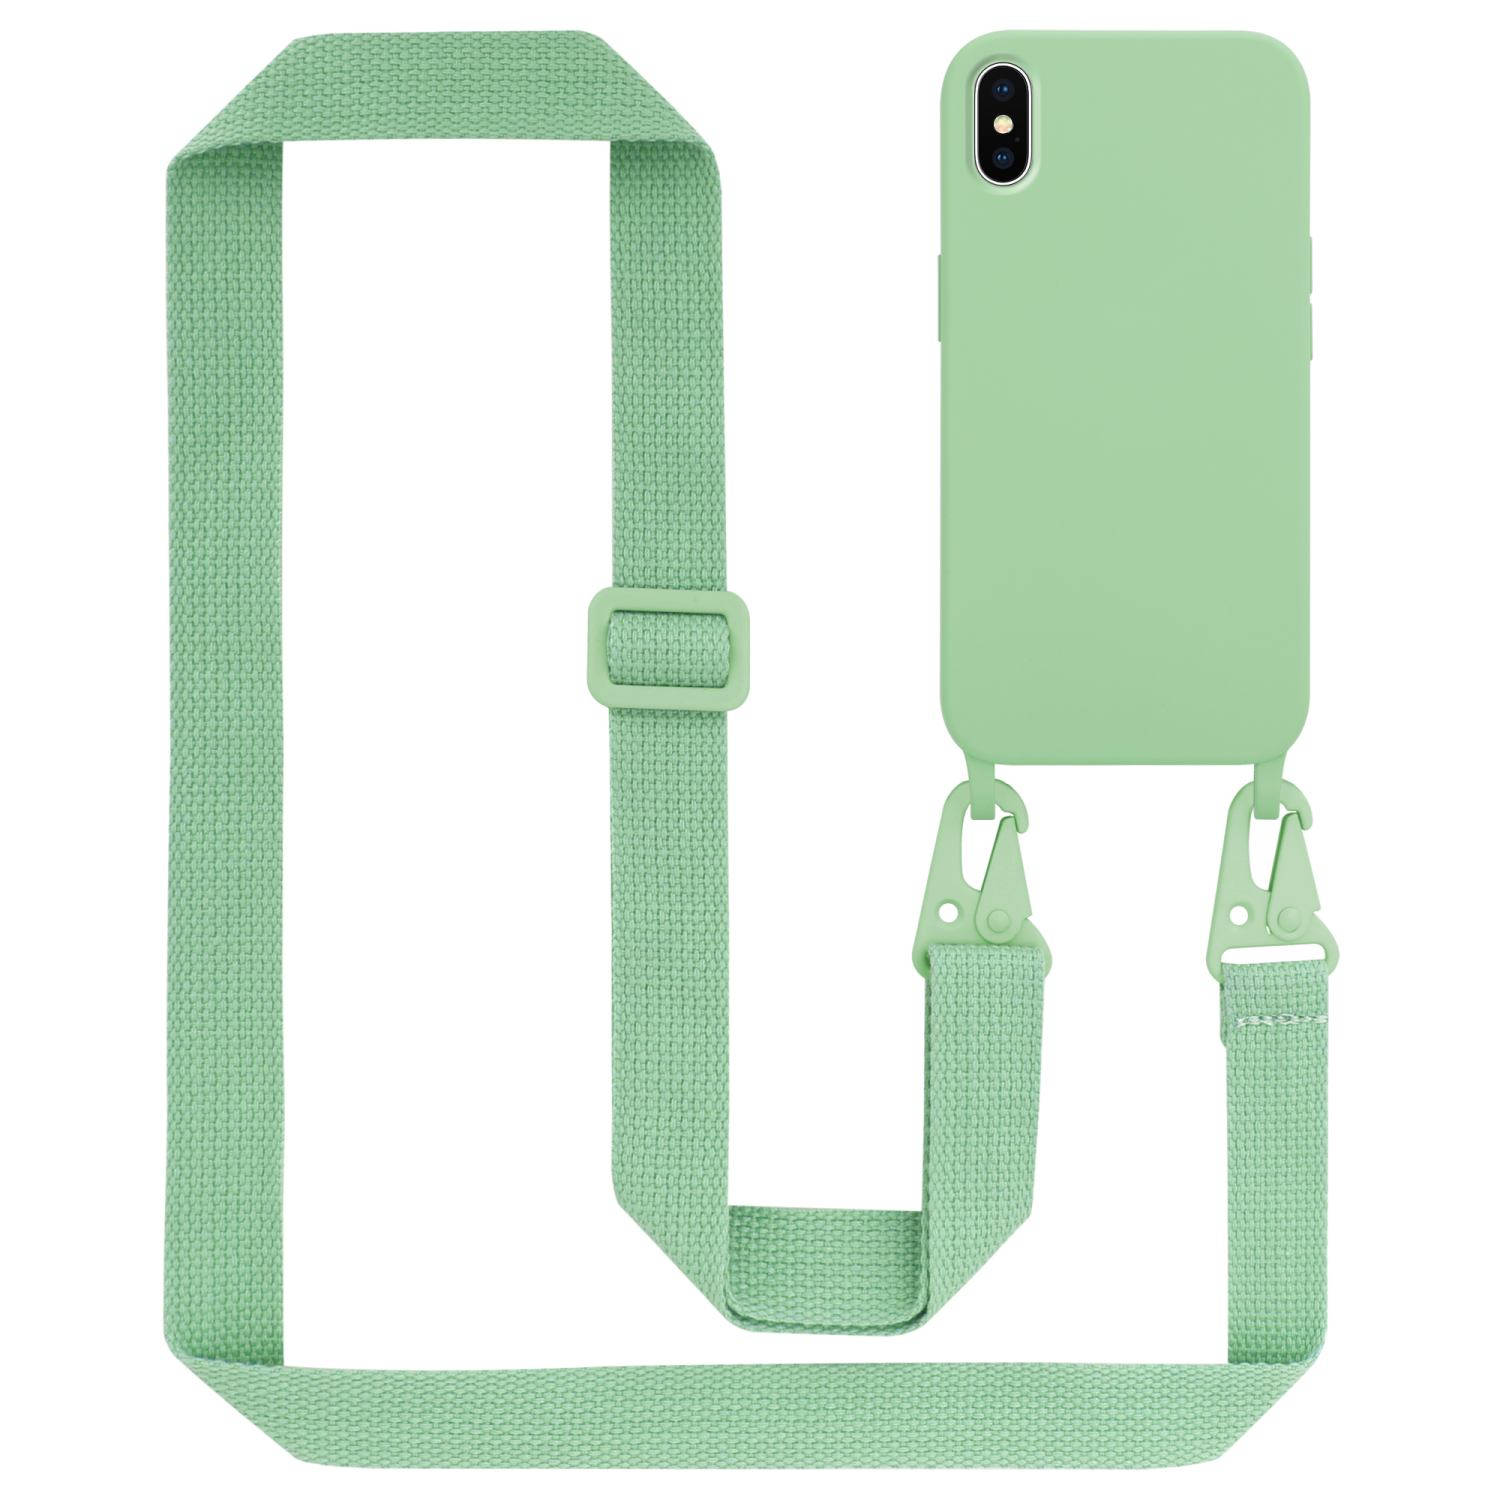 Cadorabo Mobiele telefoon ketting voor Apple iPhone X / XS in LIQUID LICHT GROEN - Silicone beschermhoes met lengte verstelbare koord riem